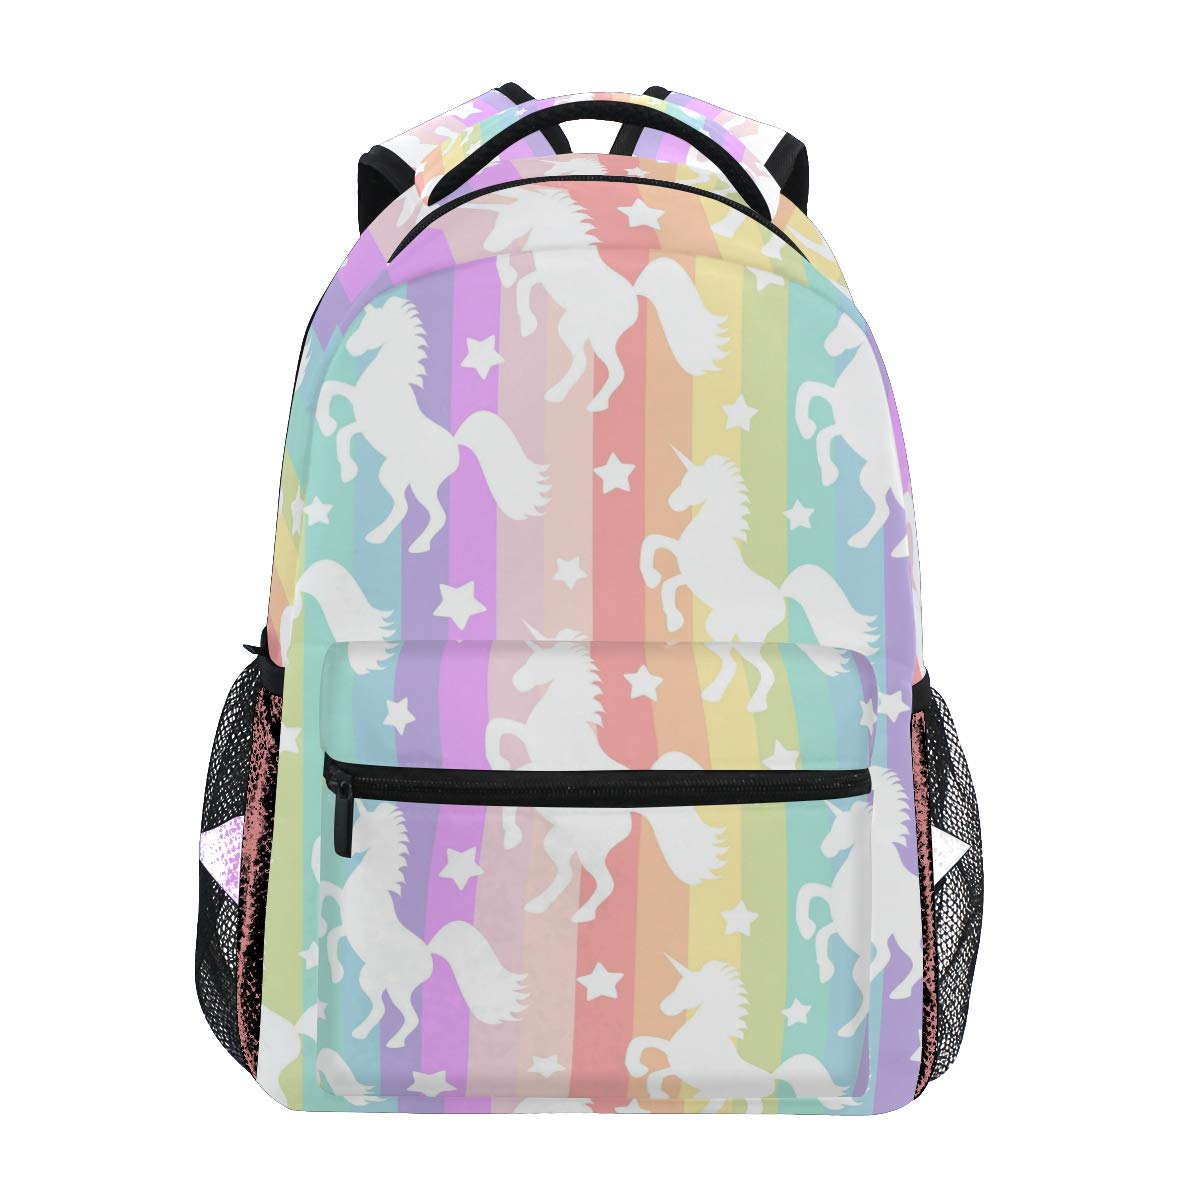 Mädchen Einhorn Rucksäcke für Schule Pink Creme Einhorn Magic Star Bookbags für Kinder Teenager Kleinkind Mode Tagesrucksack Reise Laptop Tasche